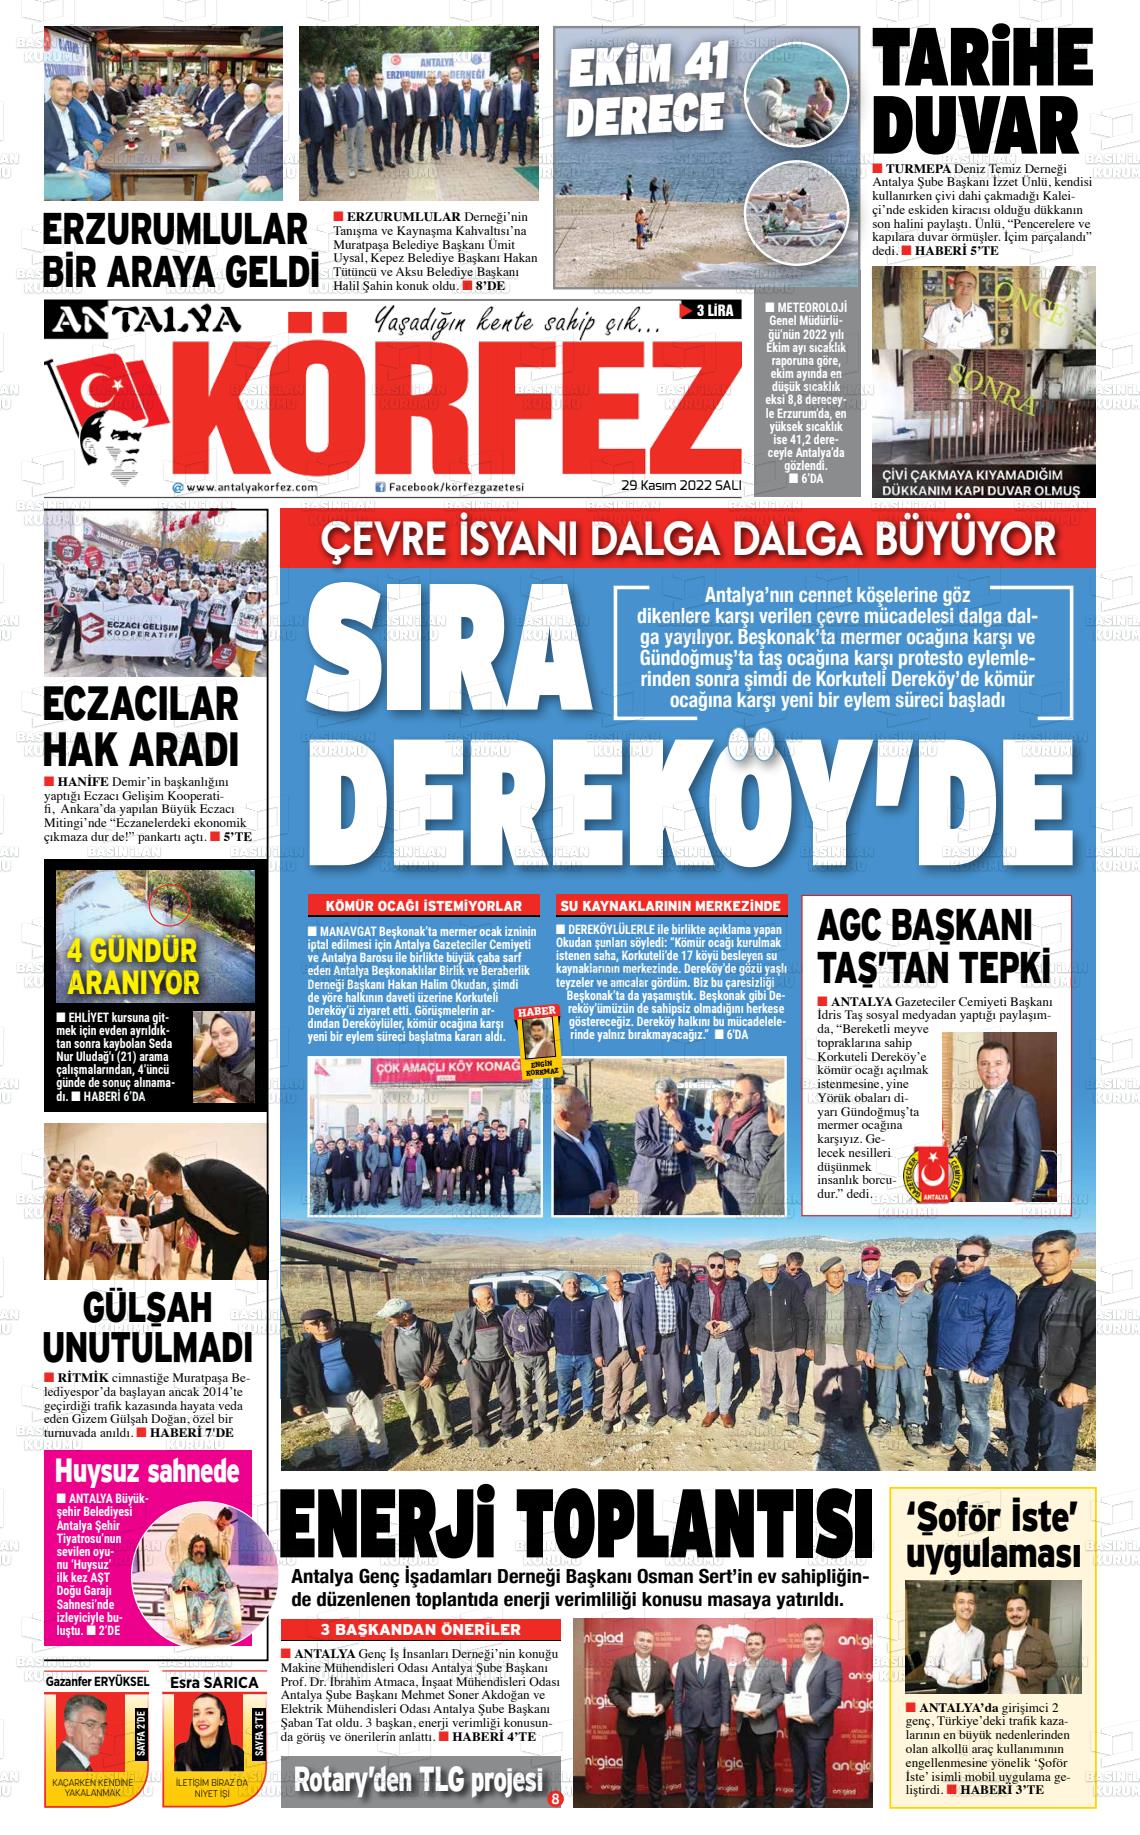 29 Kasım 2022 Antalya Körfez Gazete Manşeti